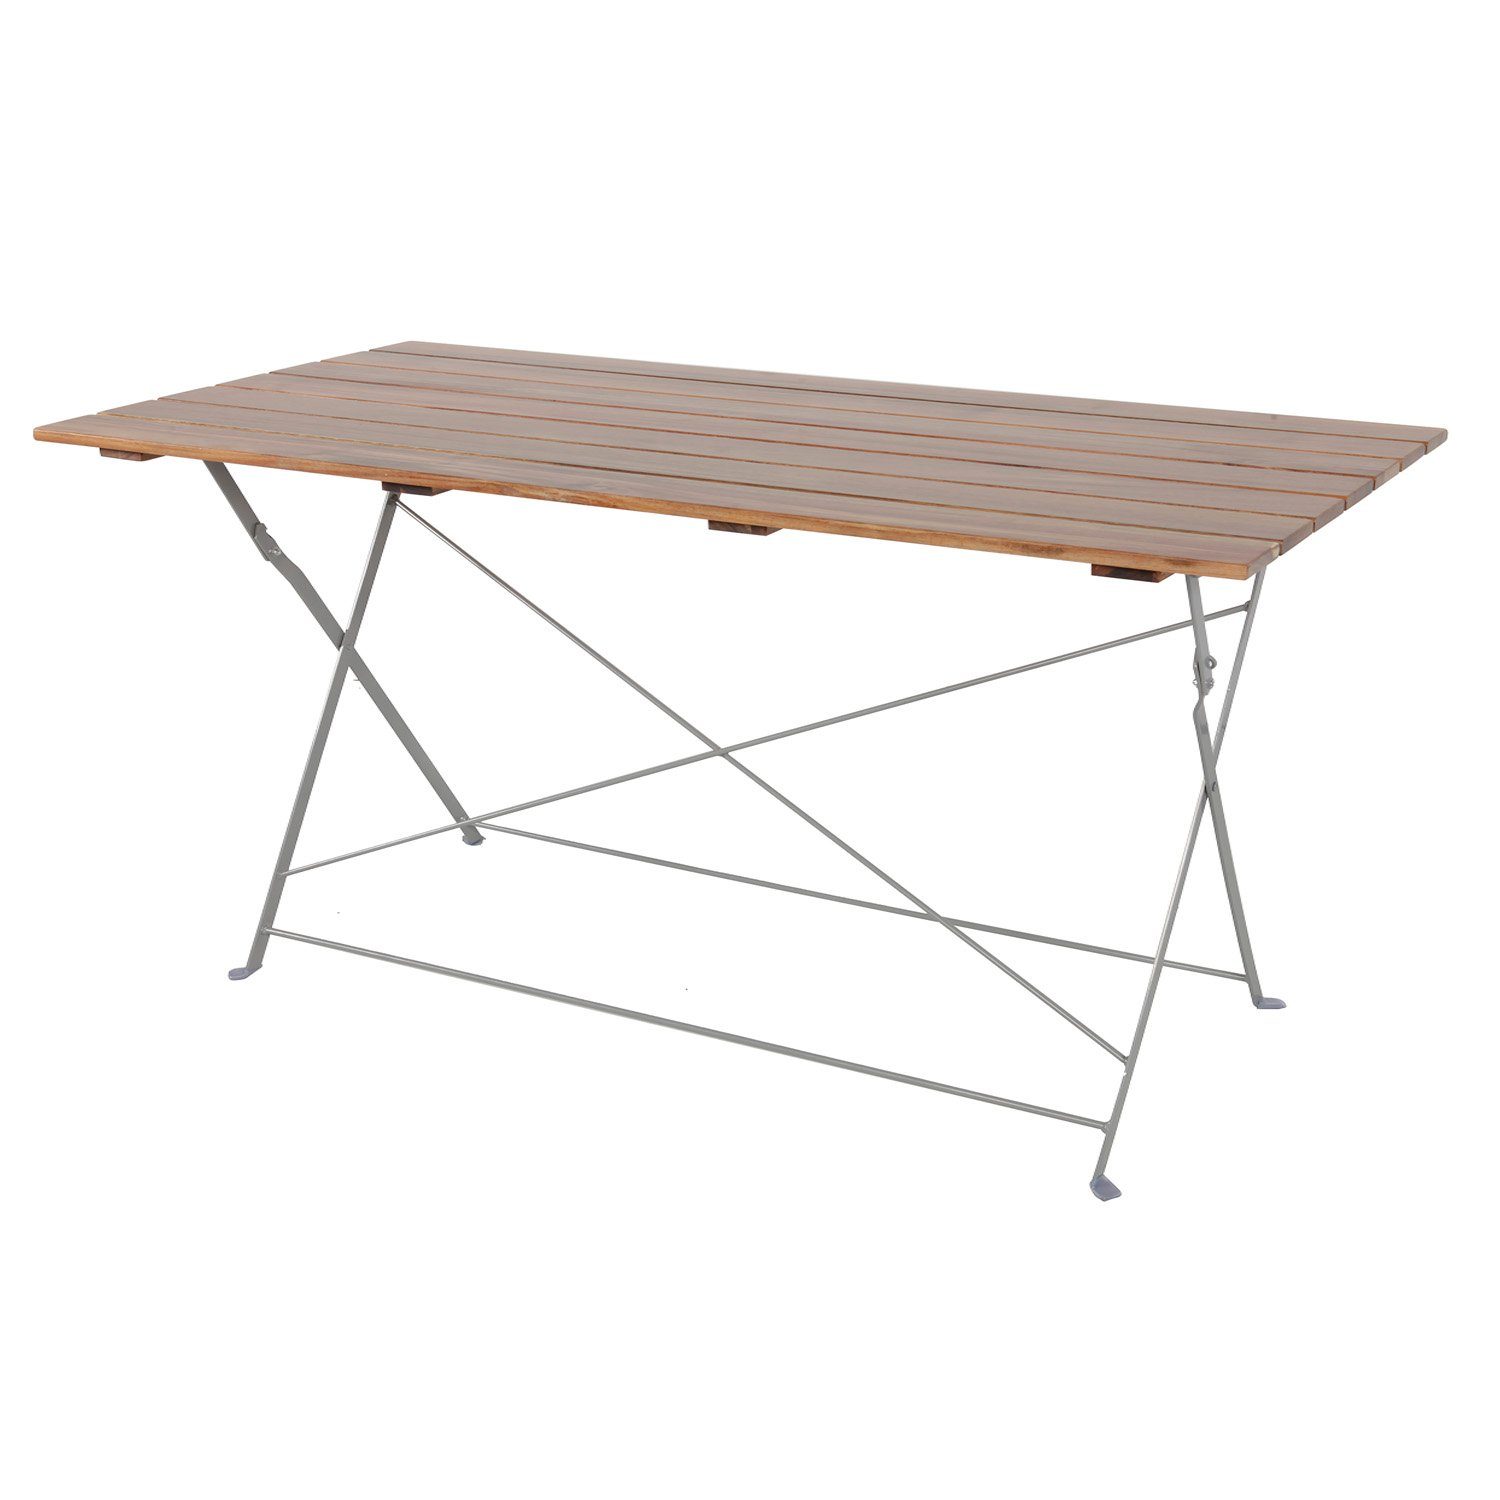 Mojawo Stahl Tisch Klapptisch 120x60cm Biergarten Esstisch Akazie Küchentisch klappbar Gartentisch